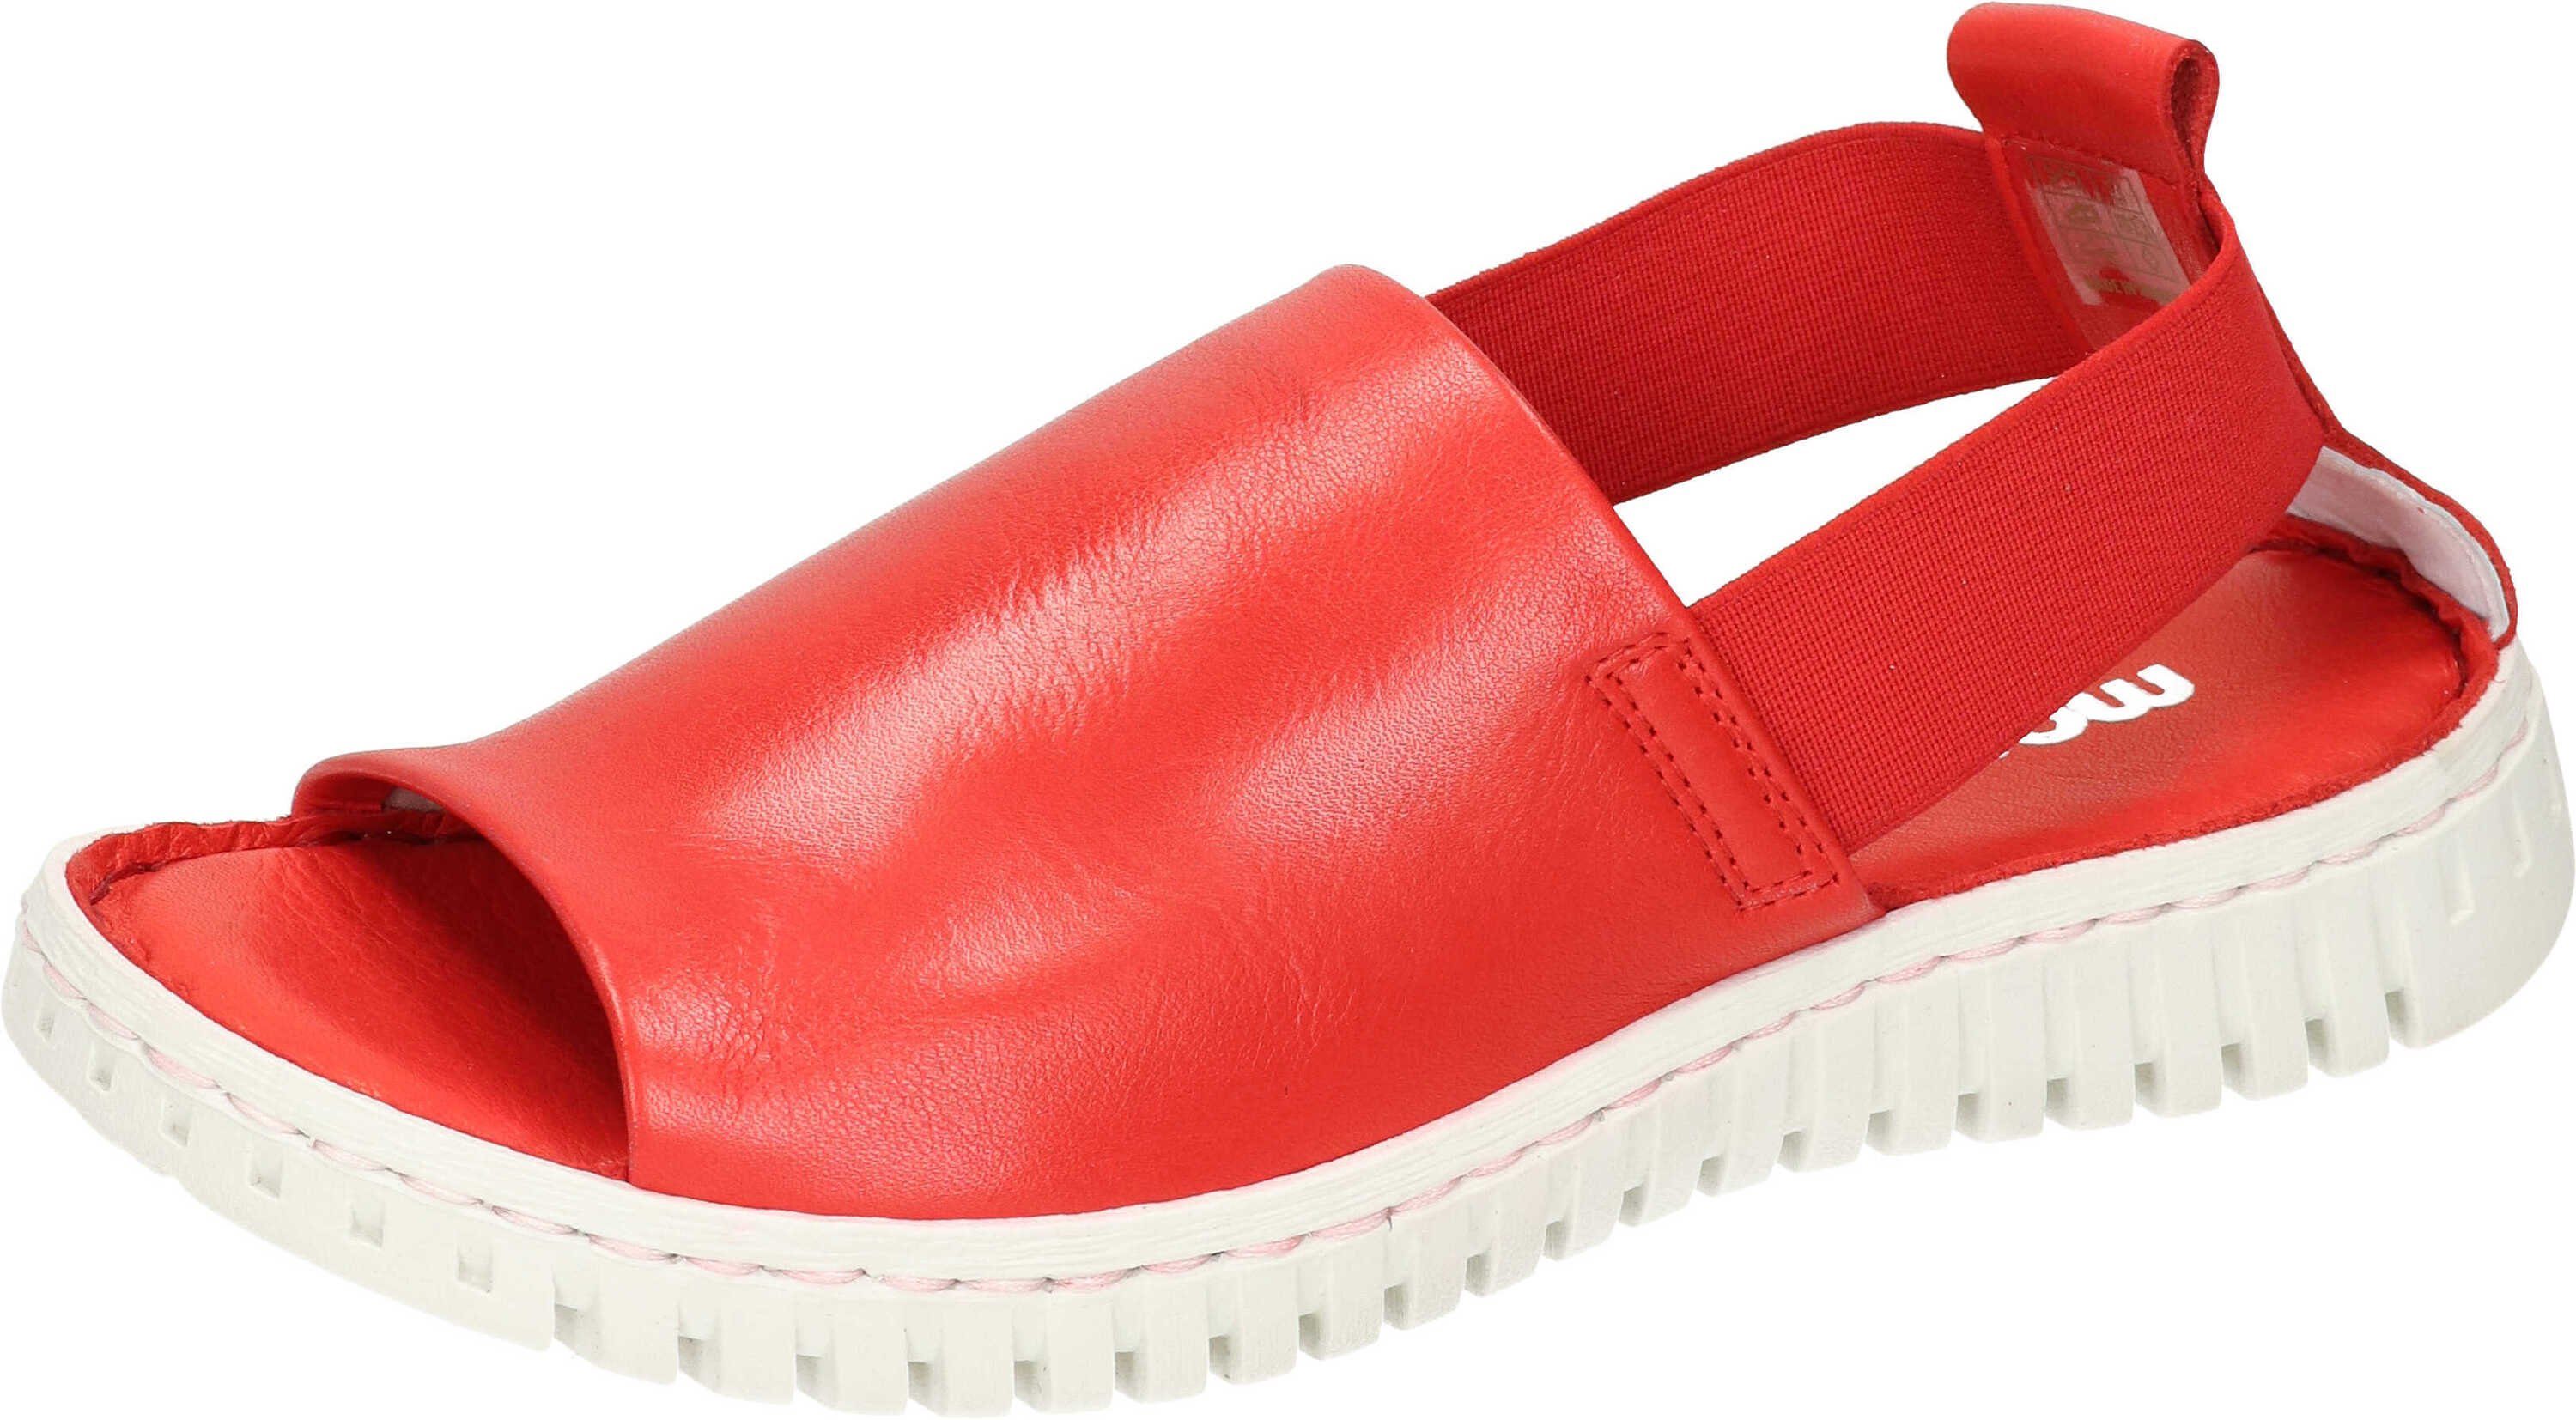 Manitu Sandalen Keilsandalette aus echtem Leder rot | Sandaletten